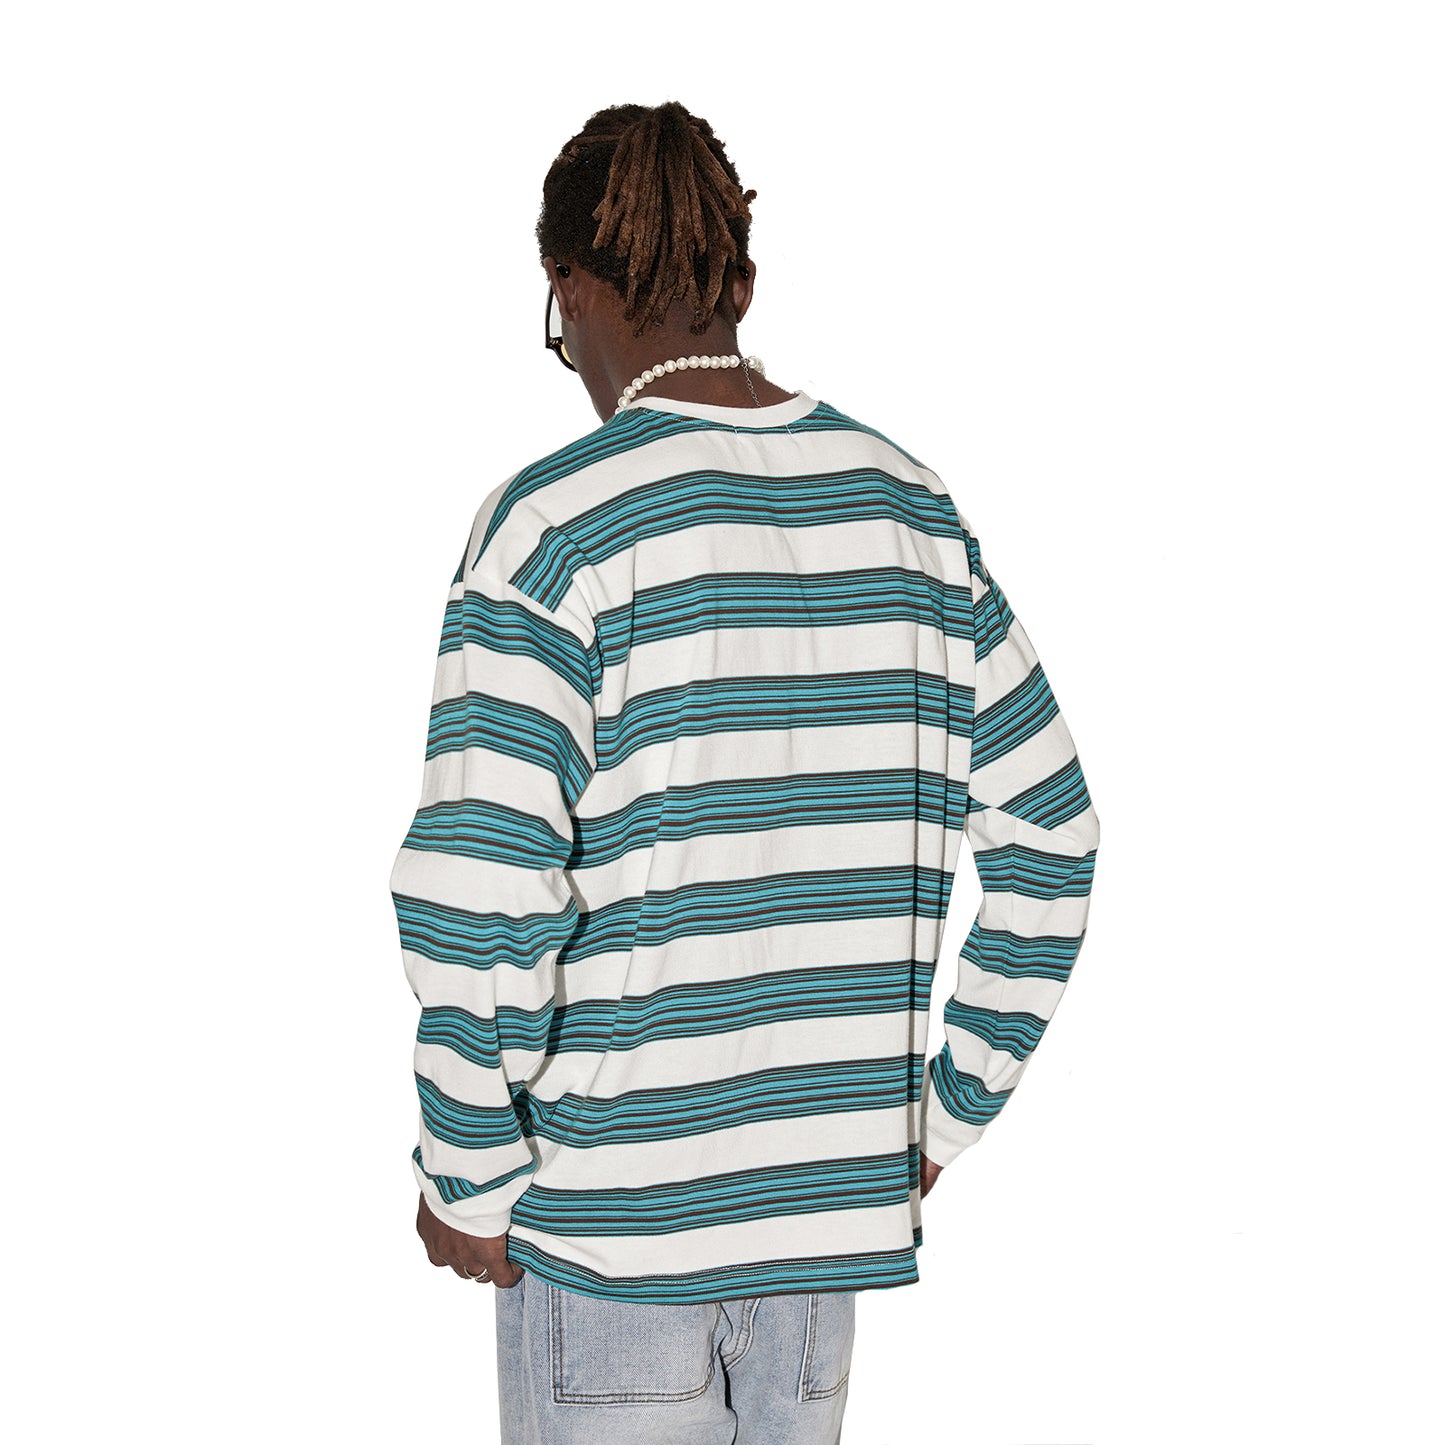 Oversized Striped Long Sleeve Shirts Streetwear for Men Women